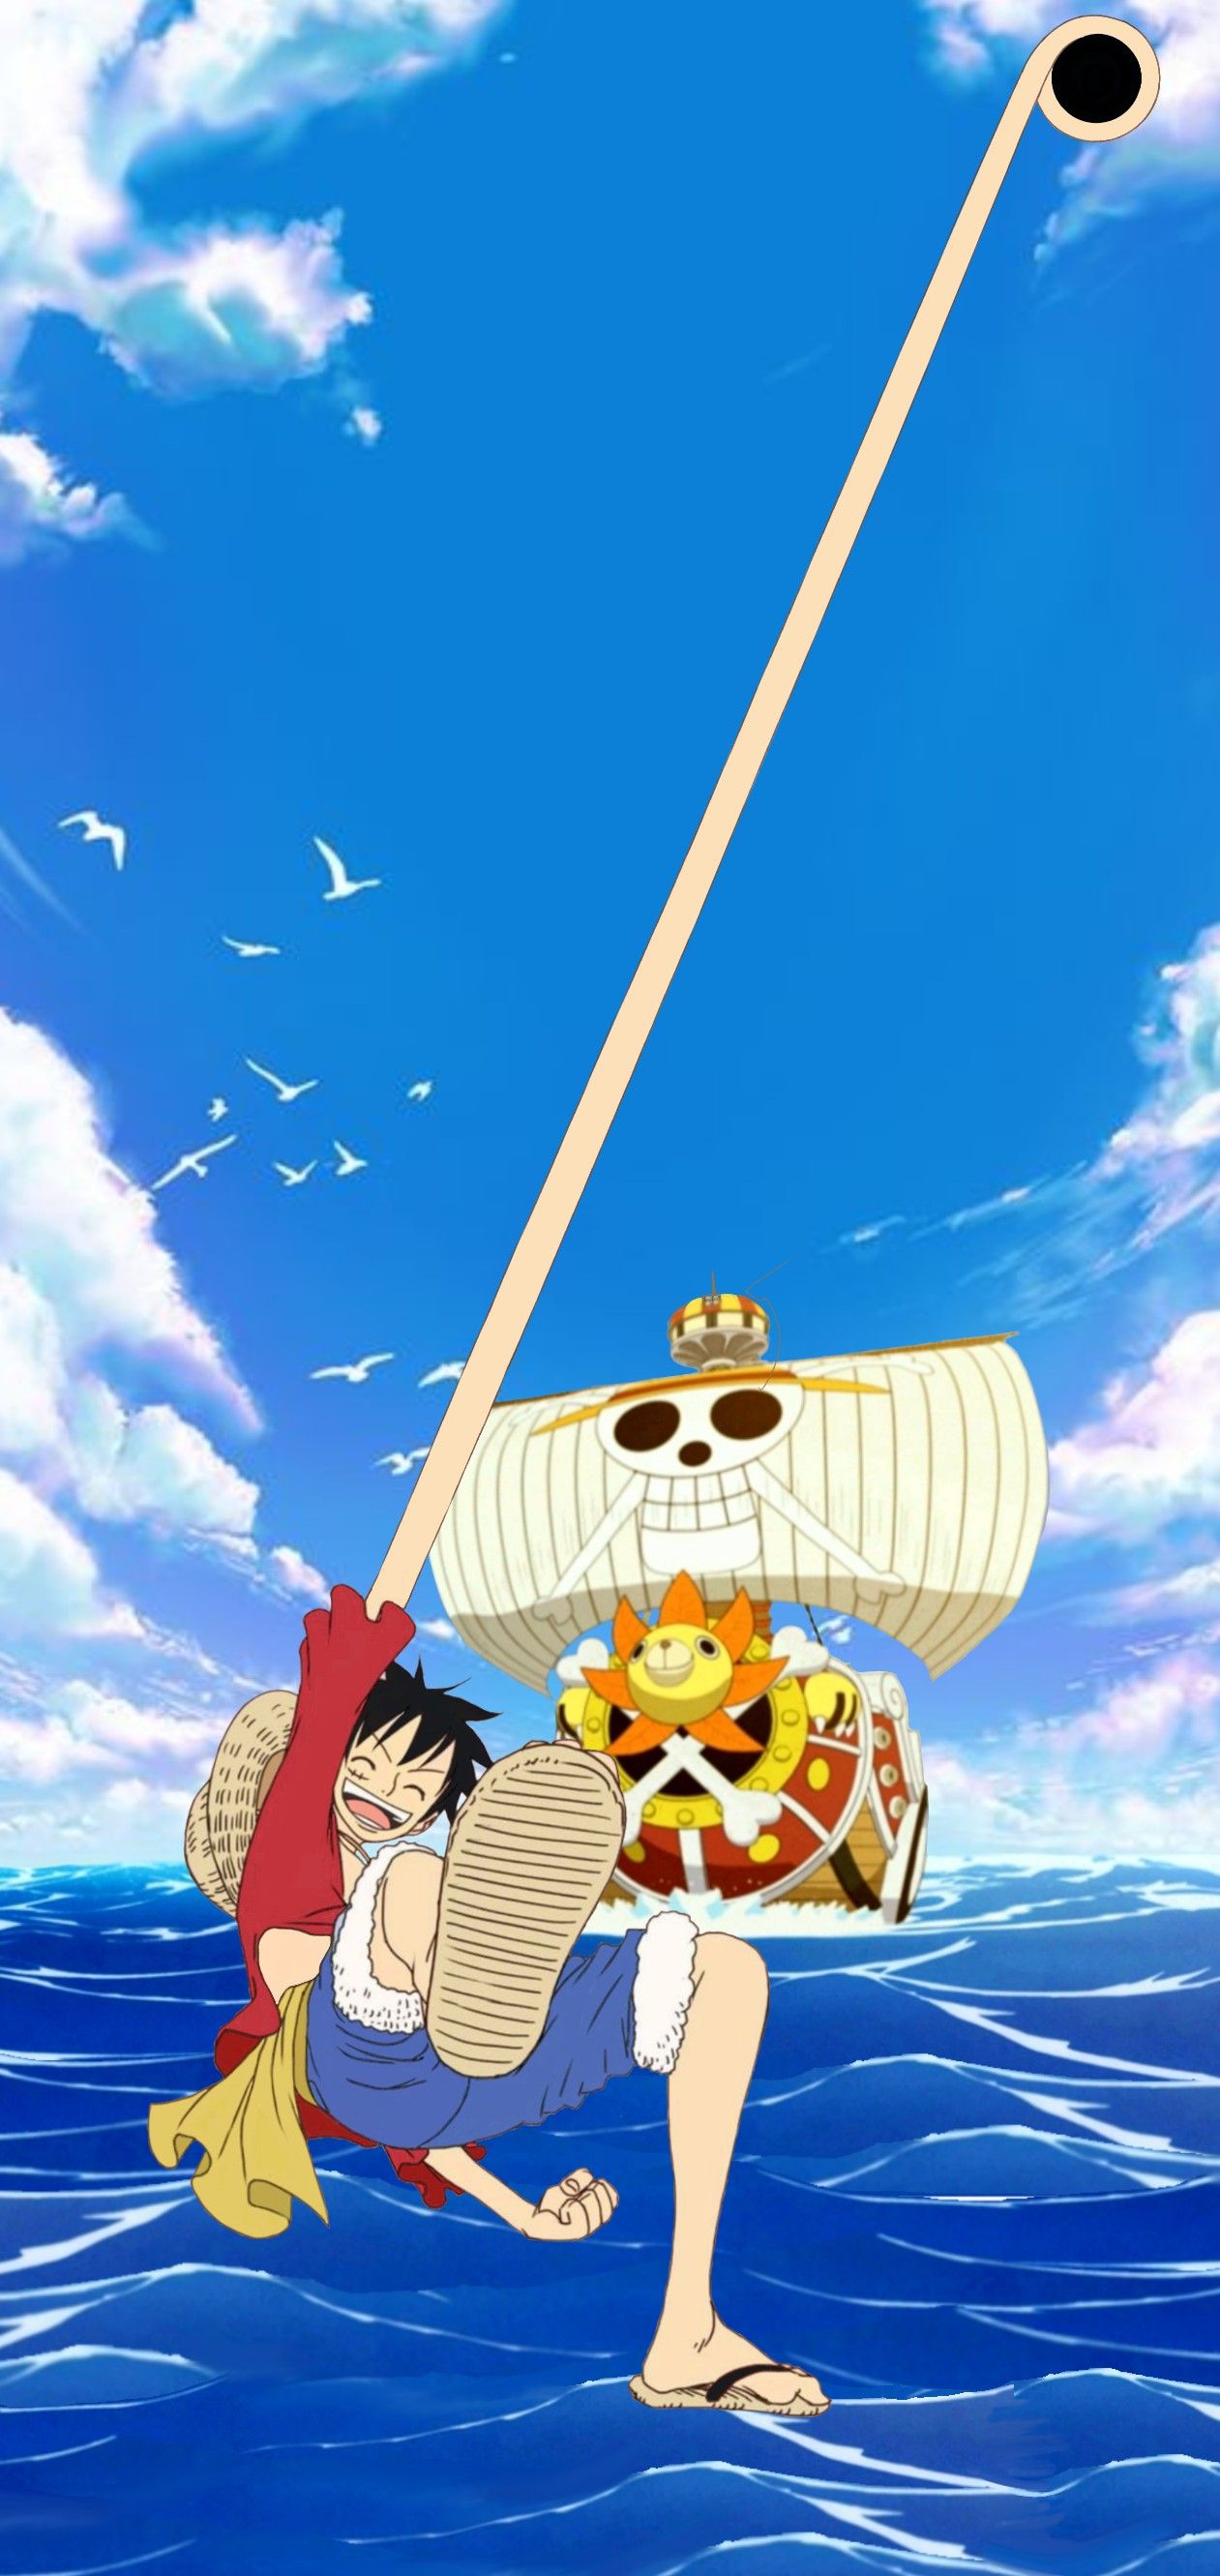 Thousand Sunny One Piece #manga One Piece #1080P #wallpaper #hdwallpaper # desktop